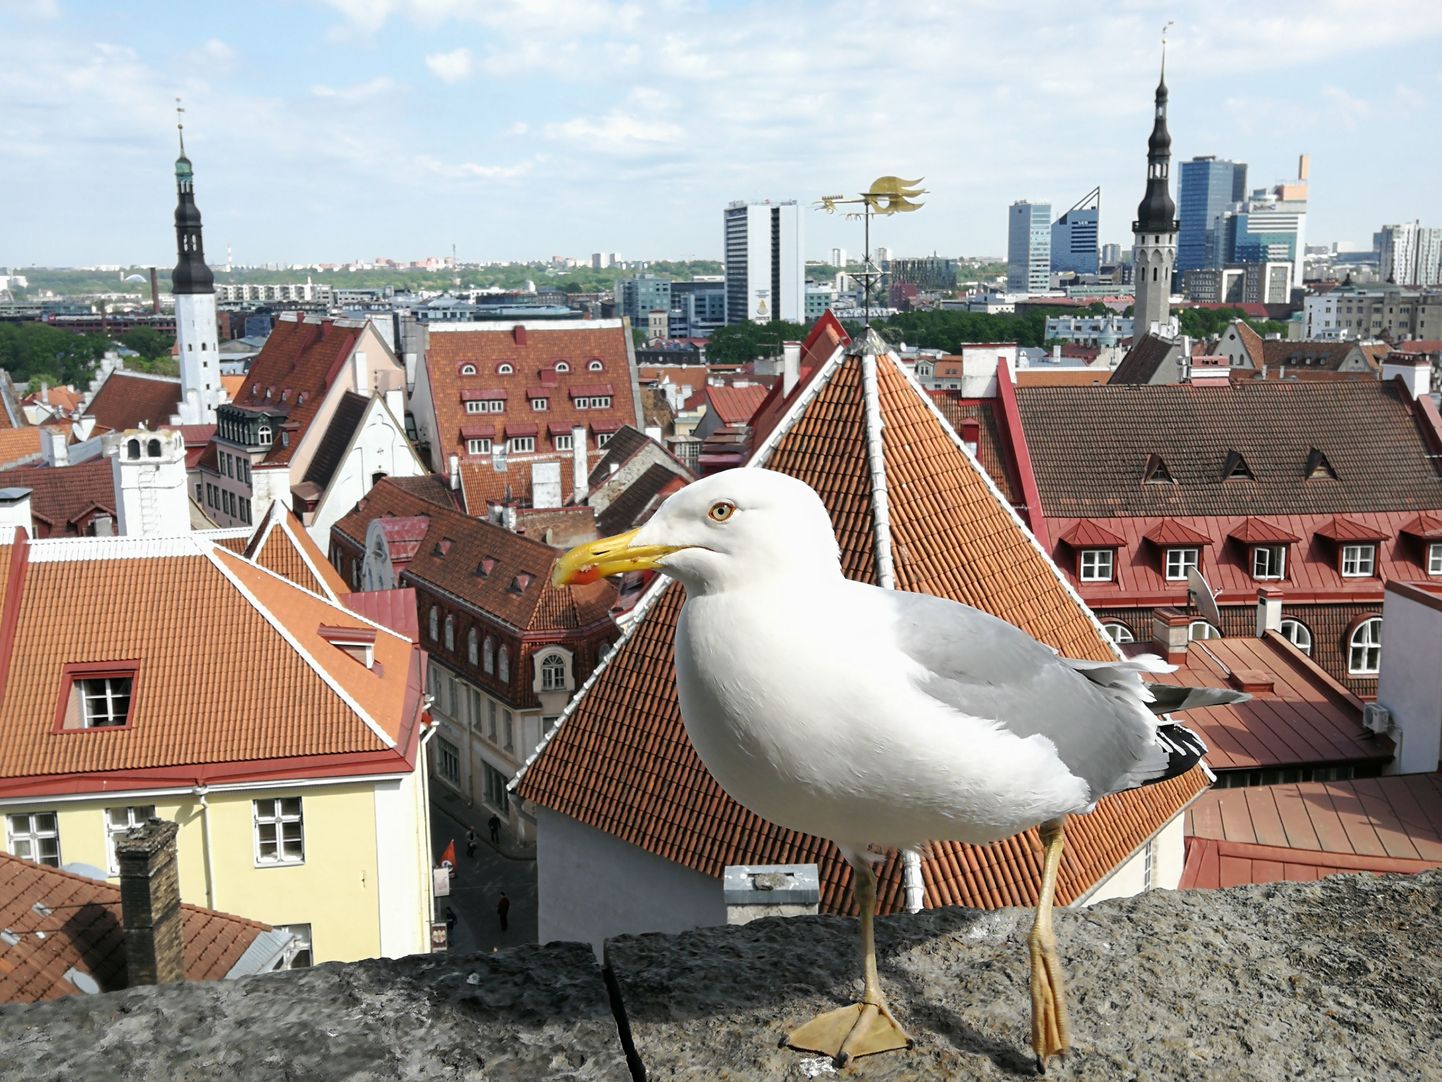 Et Tallinna vanalinna enam väärtustada, mõeldakse, kuidas hajutada turiste paremini ja kasutada ka platvorme, kust avanevad võimsad vaated.